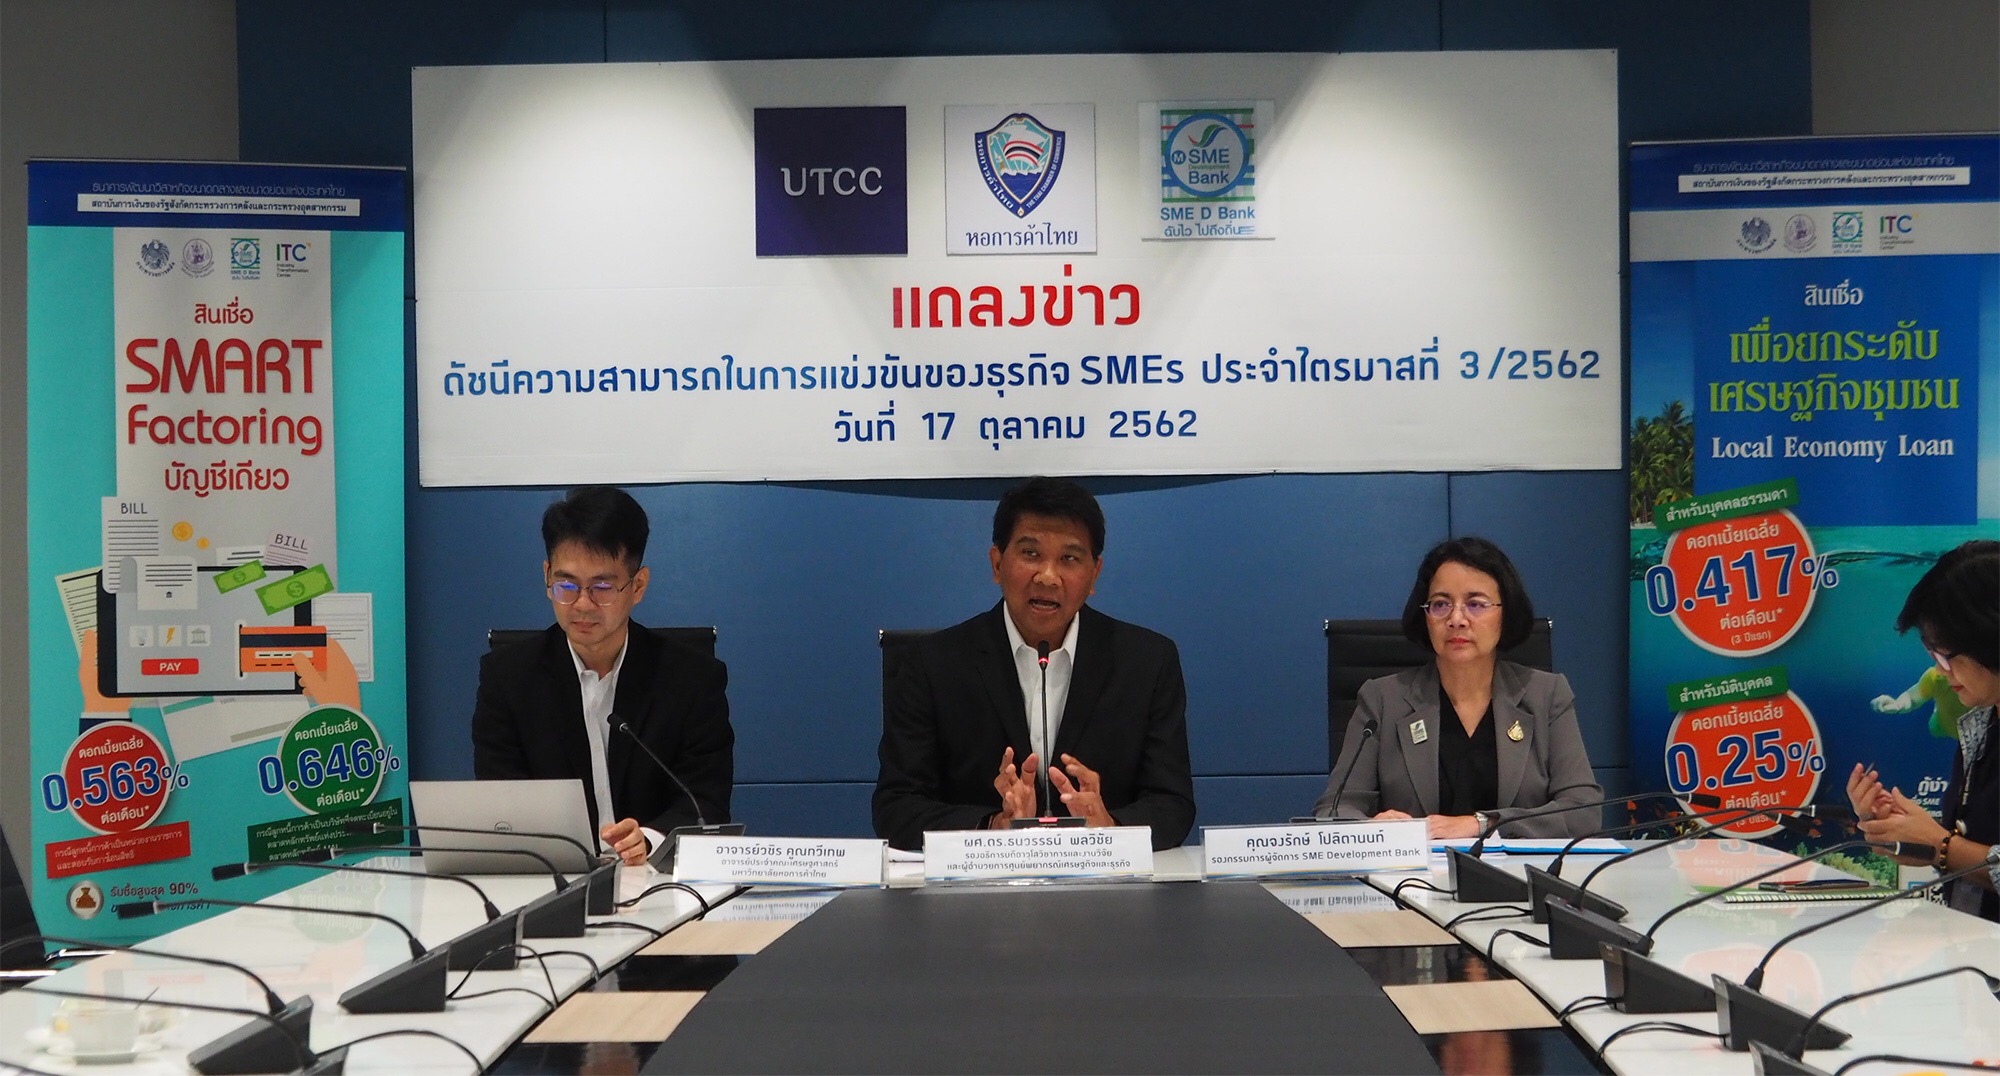 ม.หอการค้าไทย ชี้สัญญาณบวกดัชนี SMEs Q4 คาดเพิ่มขึ้น ธพว.หนุนสินเชื่อดอกเบี้ยพิเศษเริ่ม 0.479%